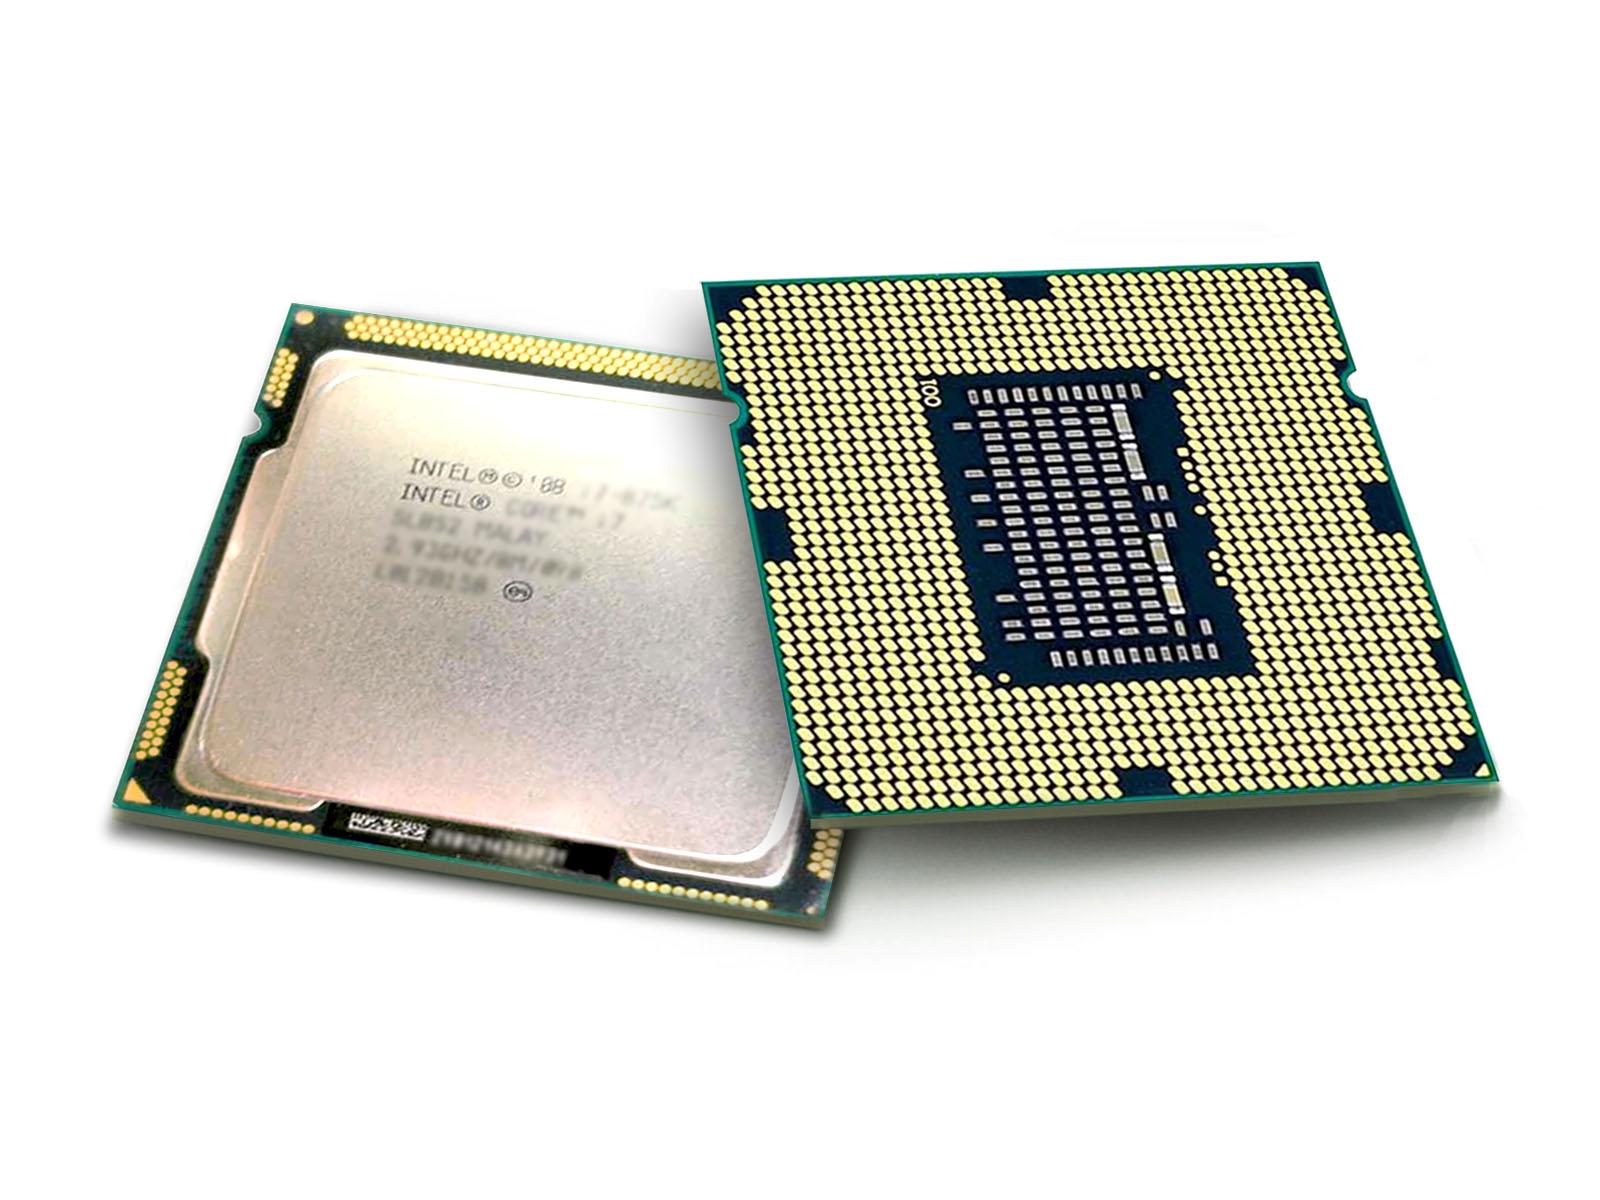 Intel Core i5-670 cpu